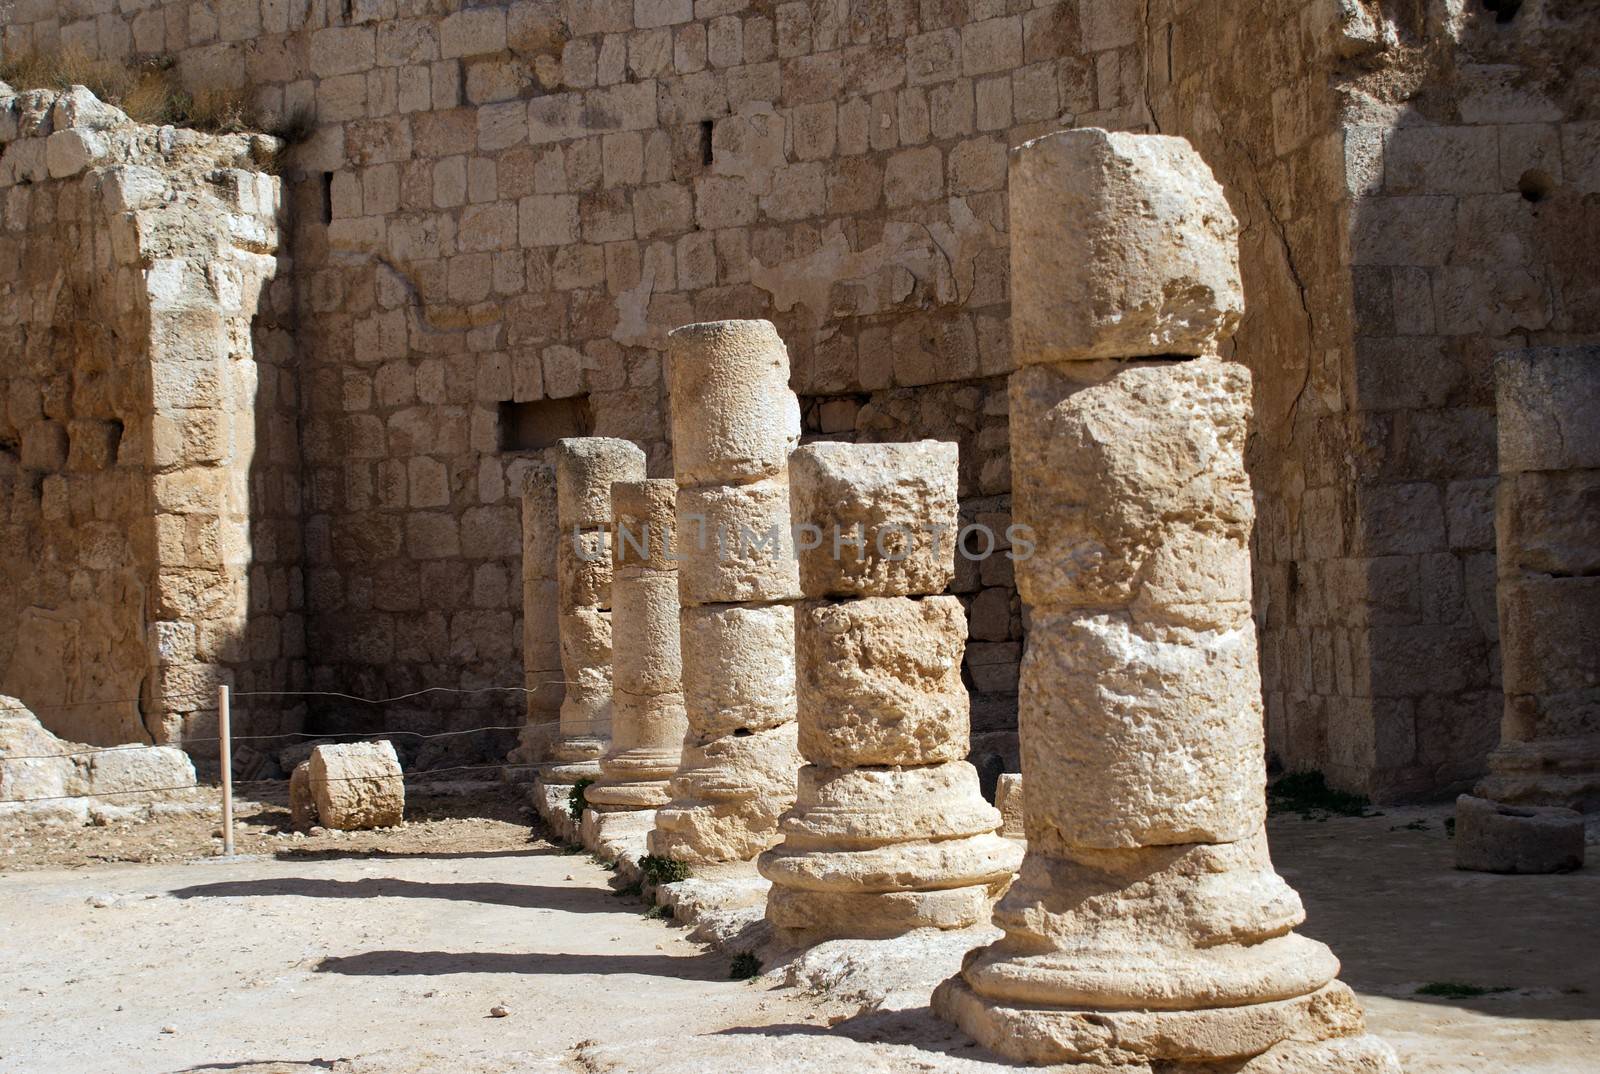 Herodion ruins in Israel by javax